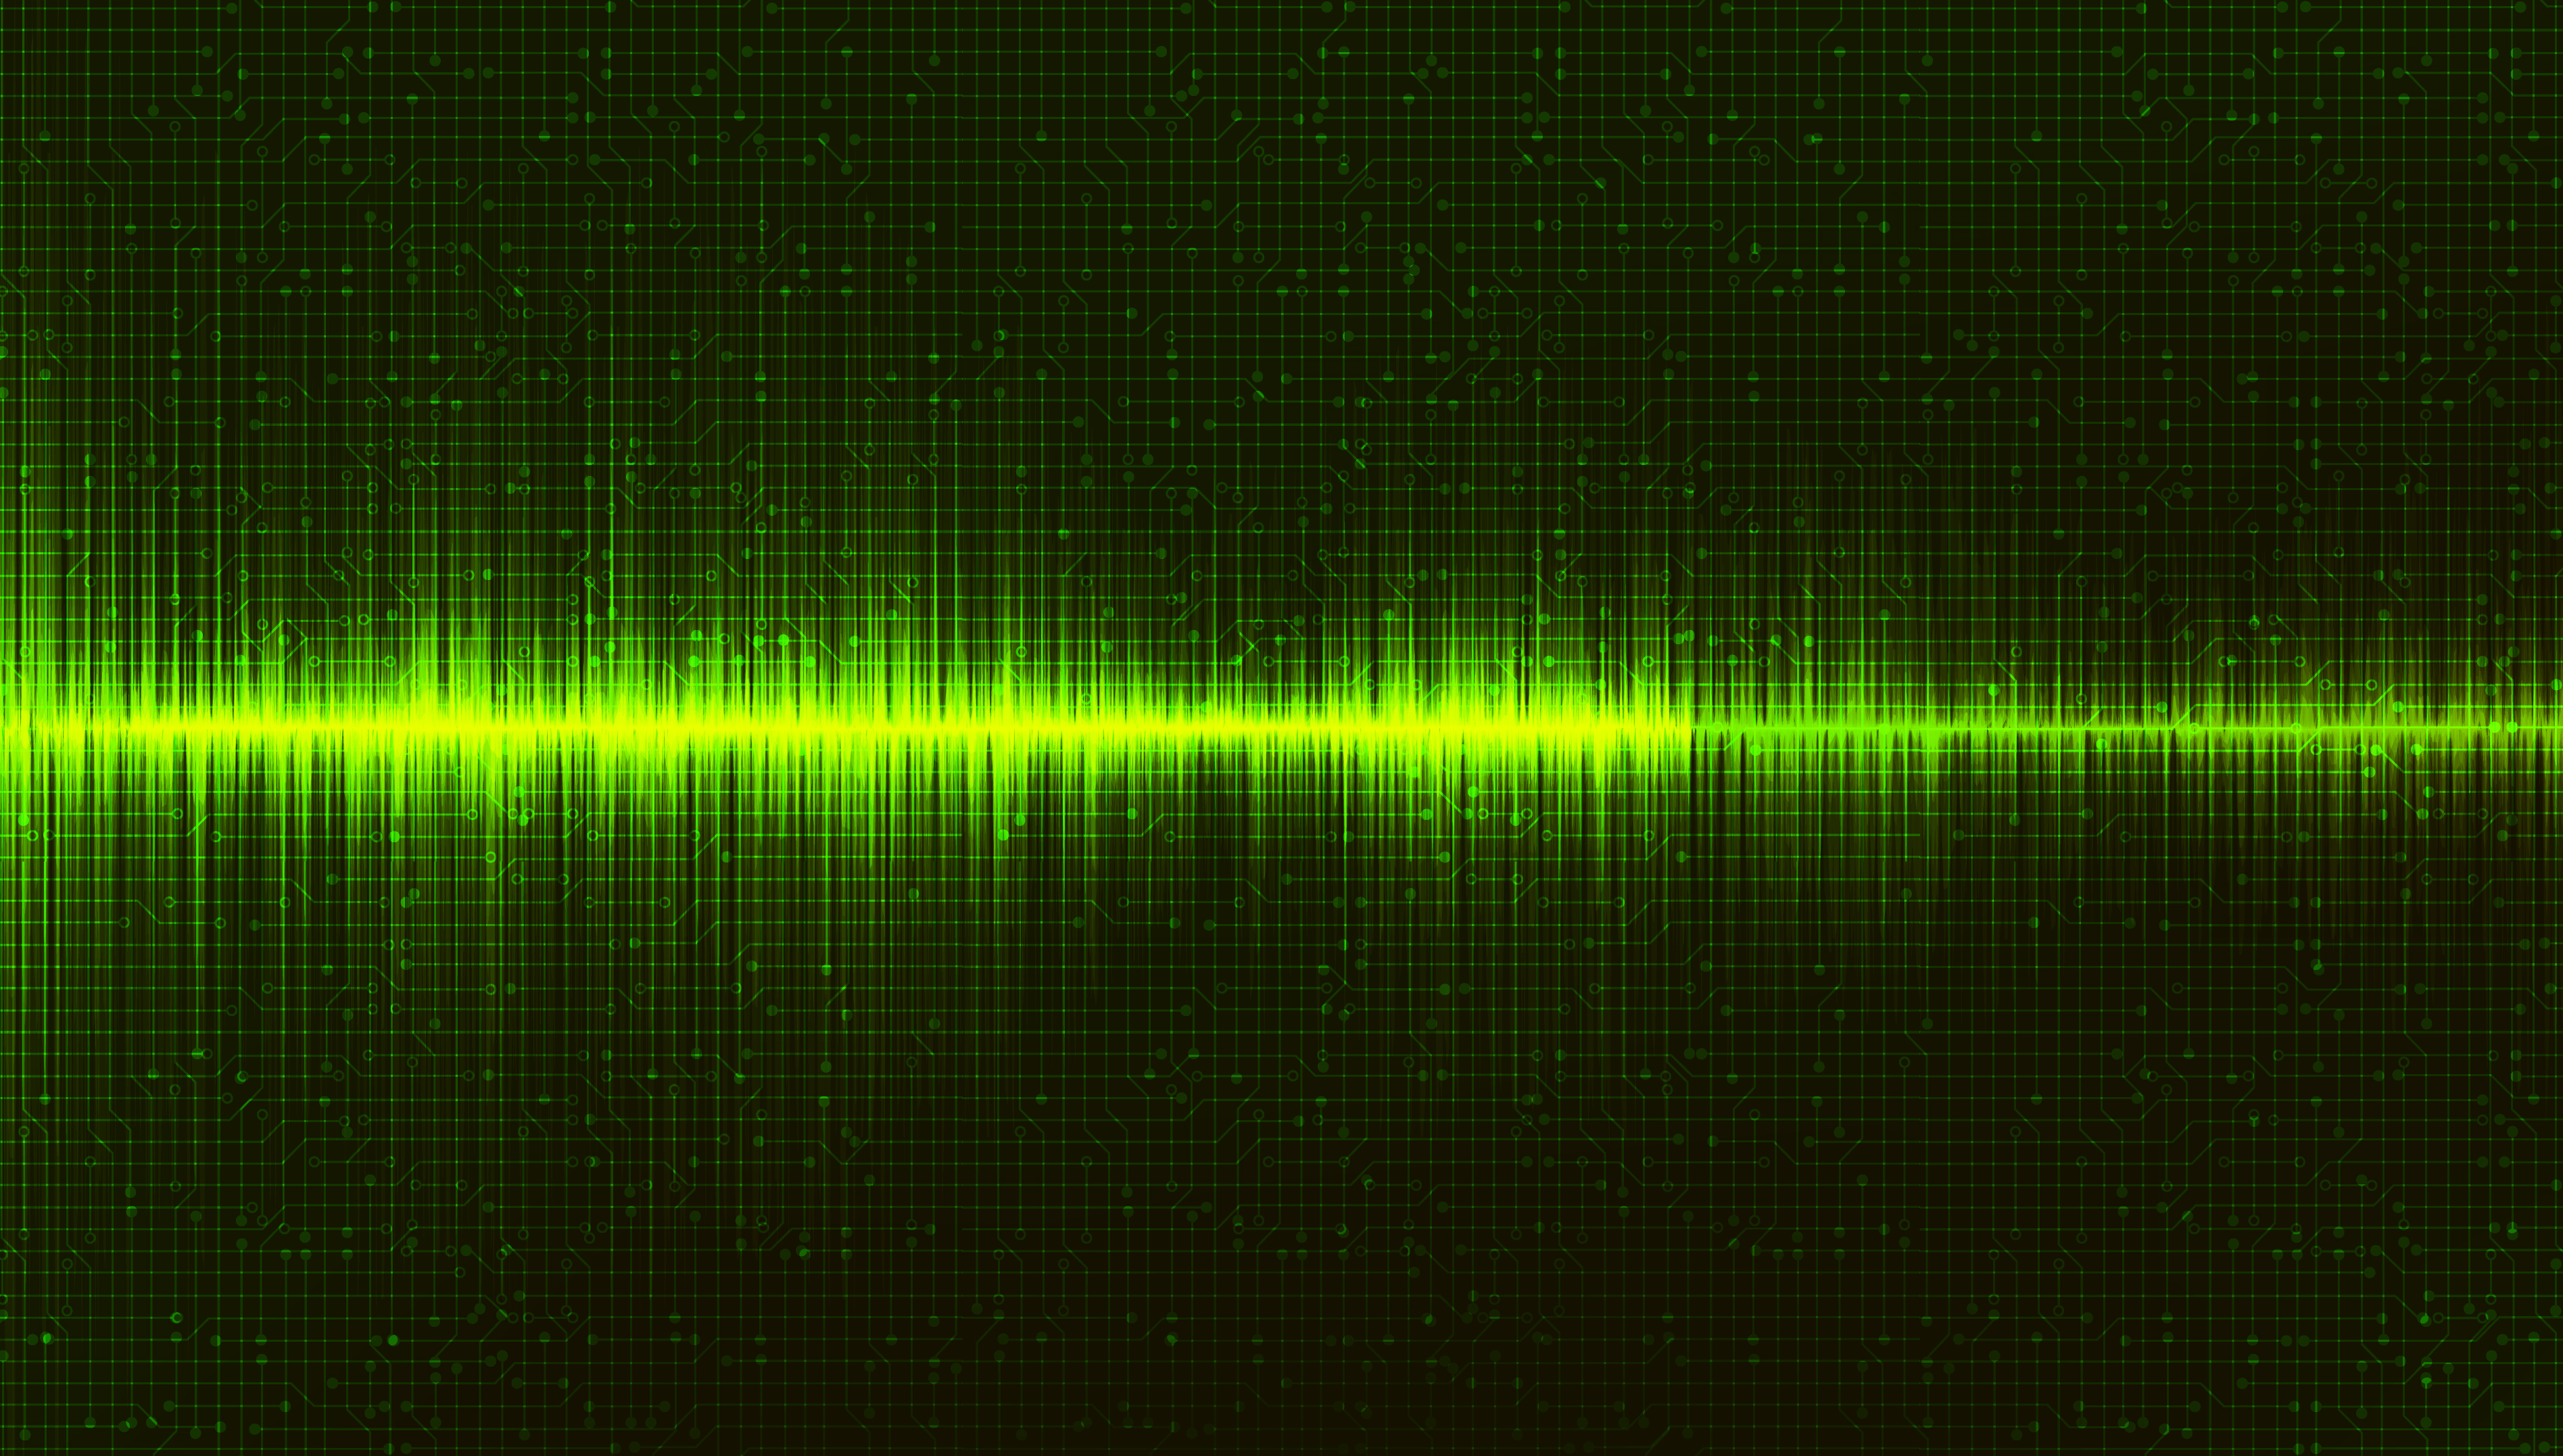 Nền sóng âm thanh số màu xanh đầy hiện đại và tinh tế. Hãy khám phá các sự kết hợp độc đáo của sóng âm thanh và màu xanh trên hình nền này.